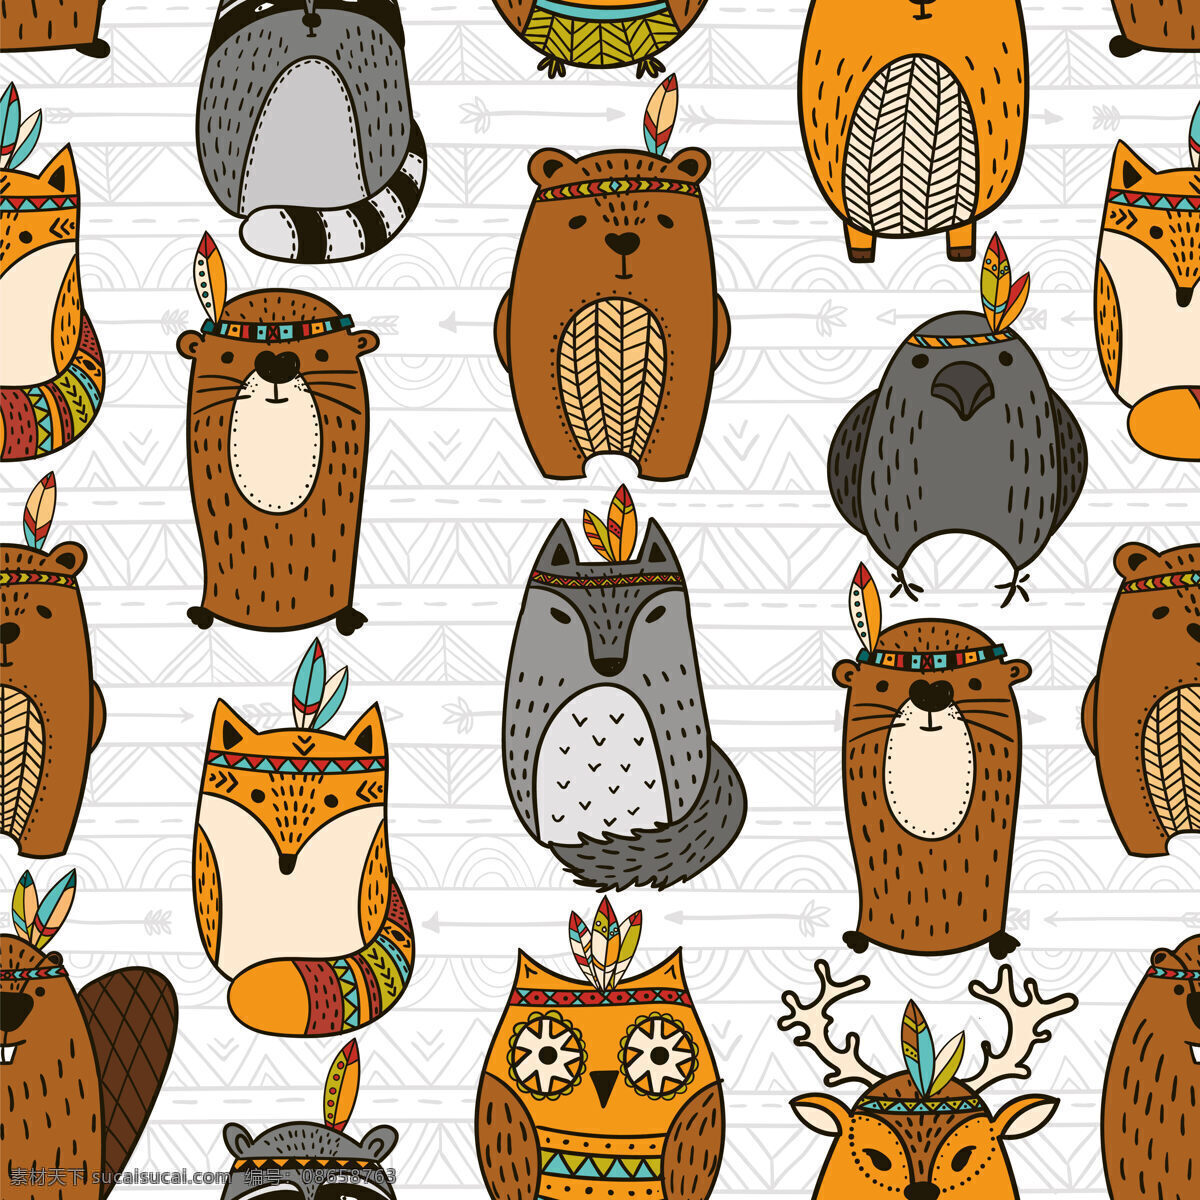 呆 萌 清新 部落 元素 猫头鹰 壁纸 图案 装饰设计 壁纸图案 羽毛 酋长头饰